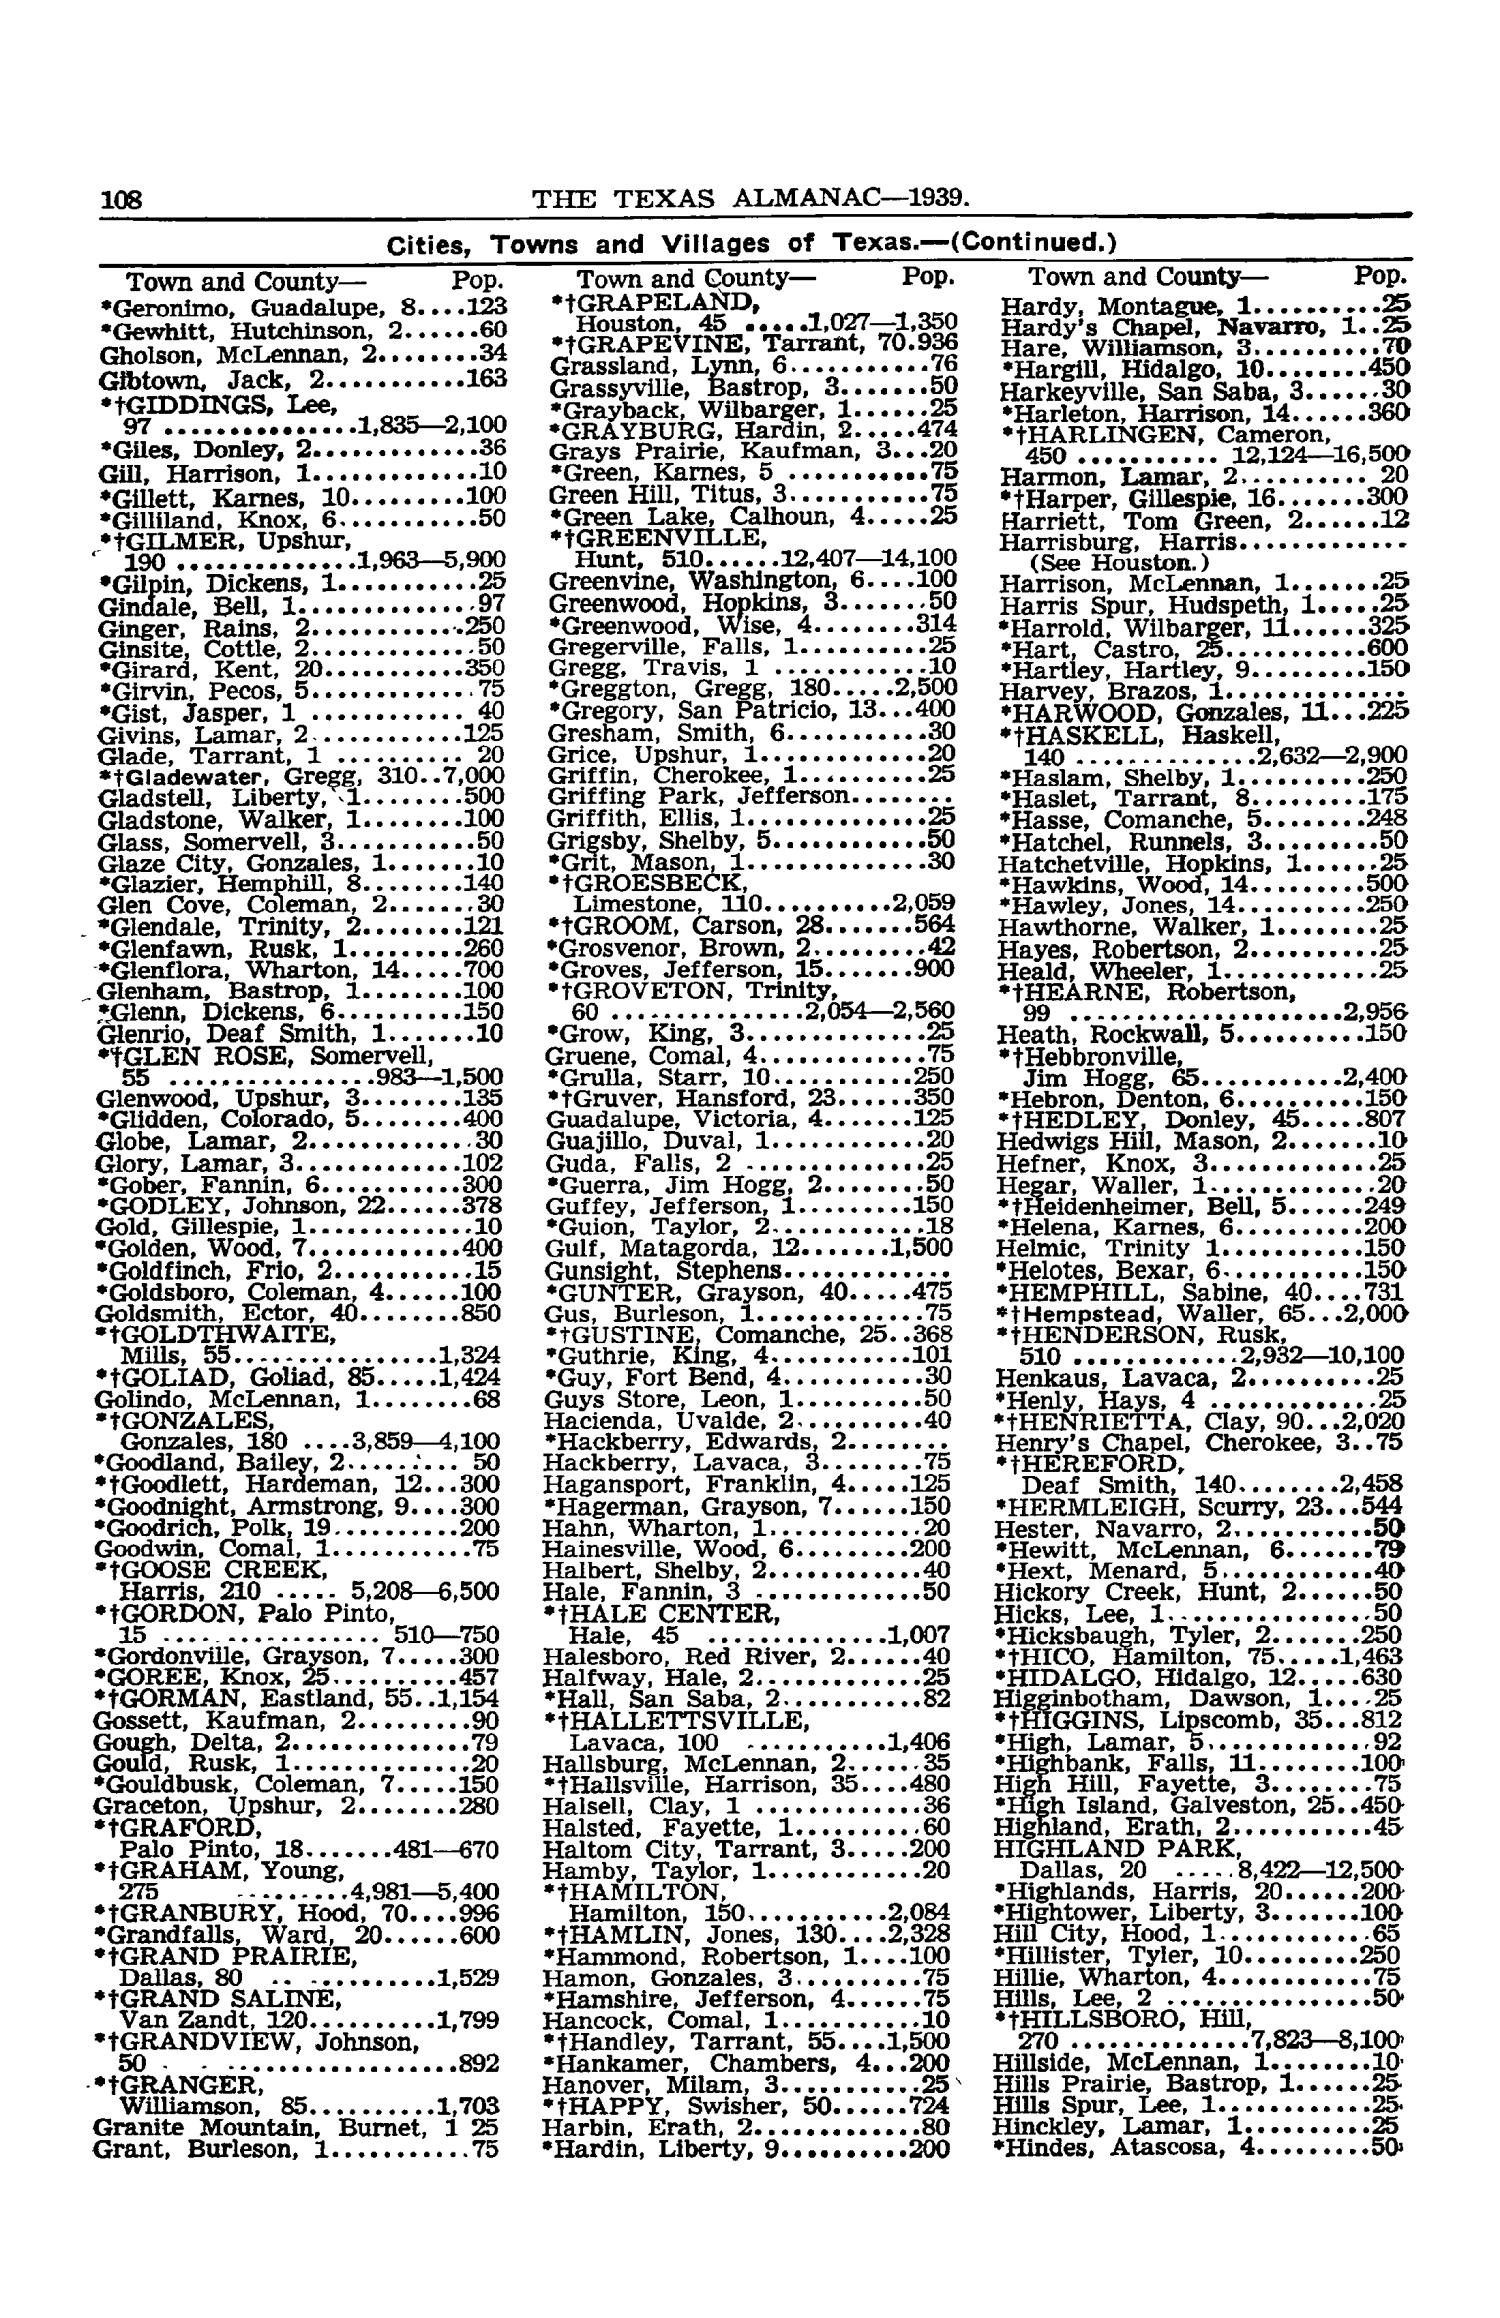 Texas Almanac, 1939-1940
                                                
                                                    108
                                                